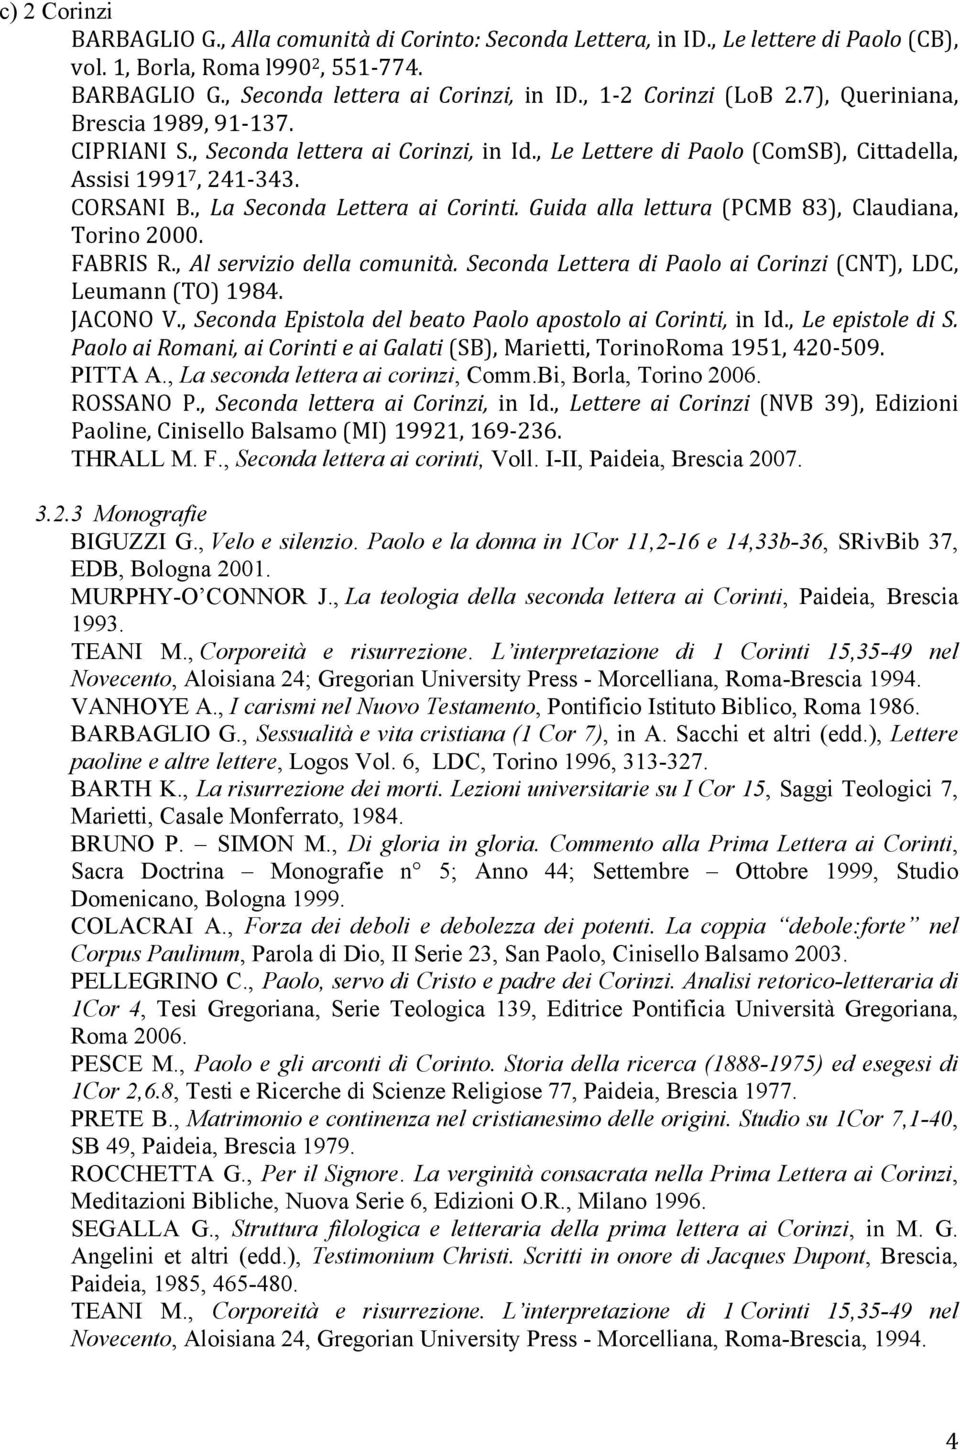 , La Seconda Lettera ai Corinti. Guida alla lettura (PCMB 83), Claudiana, Torino 2000. FABRIS R., Al servizio della comunità. Seconda Lettera di Paolo ai Corinzi (CNT), LDC, Leumann (TO) 1984.